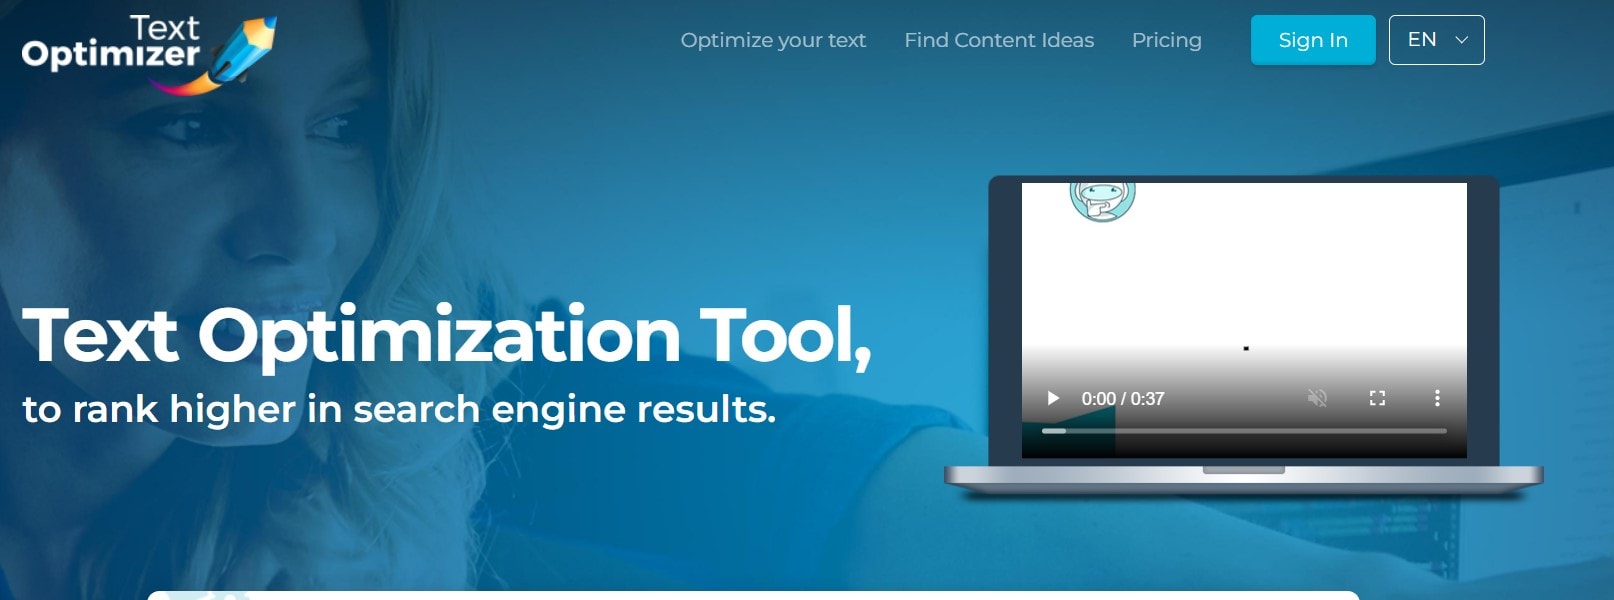 Text Optimizer: Best Product Description Generator Tools